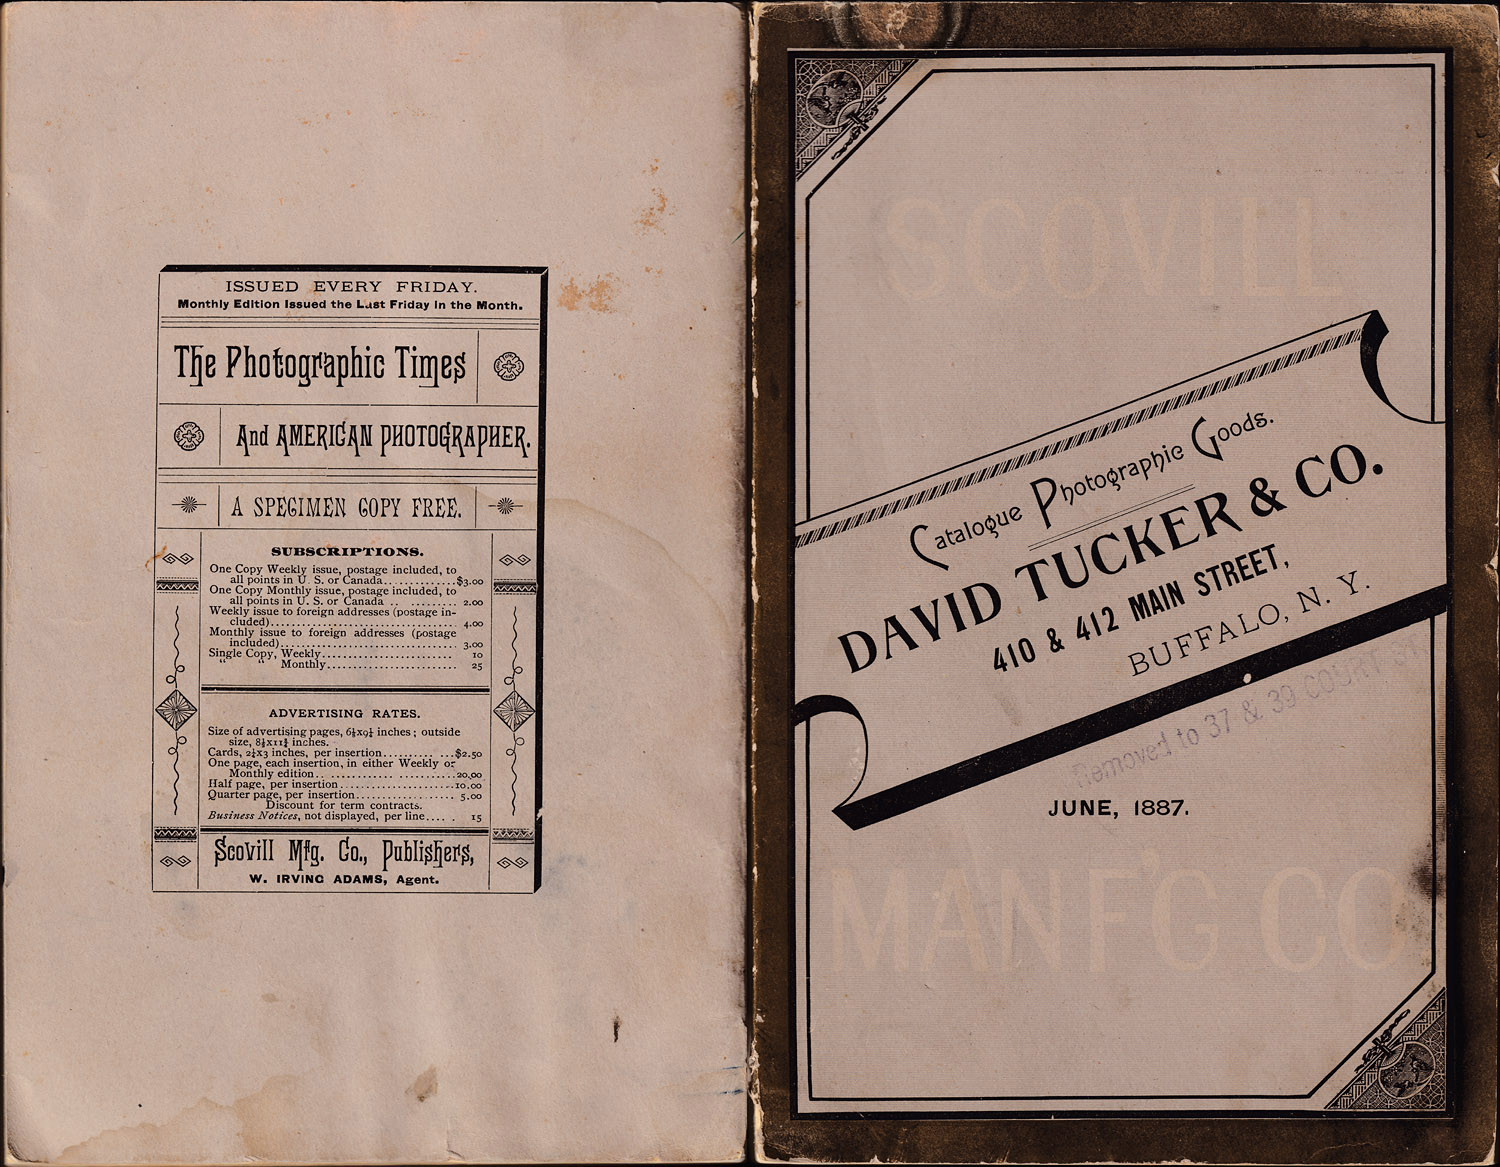 1409.scovill.david.tucker-1887.june-covers-1500.jpg